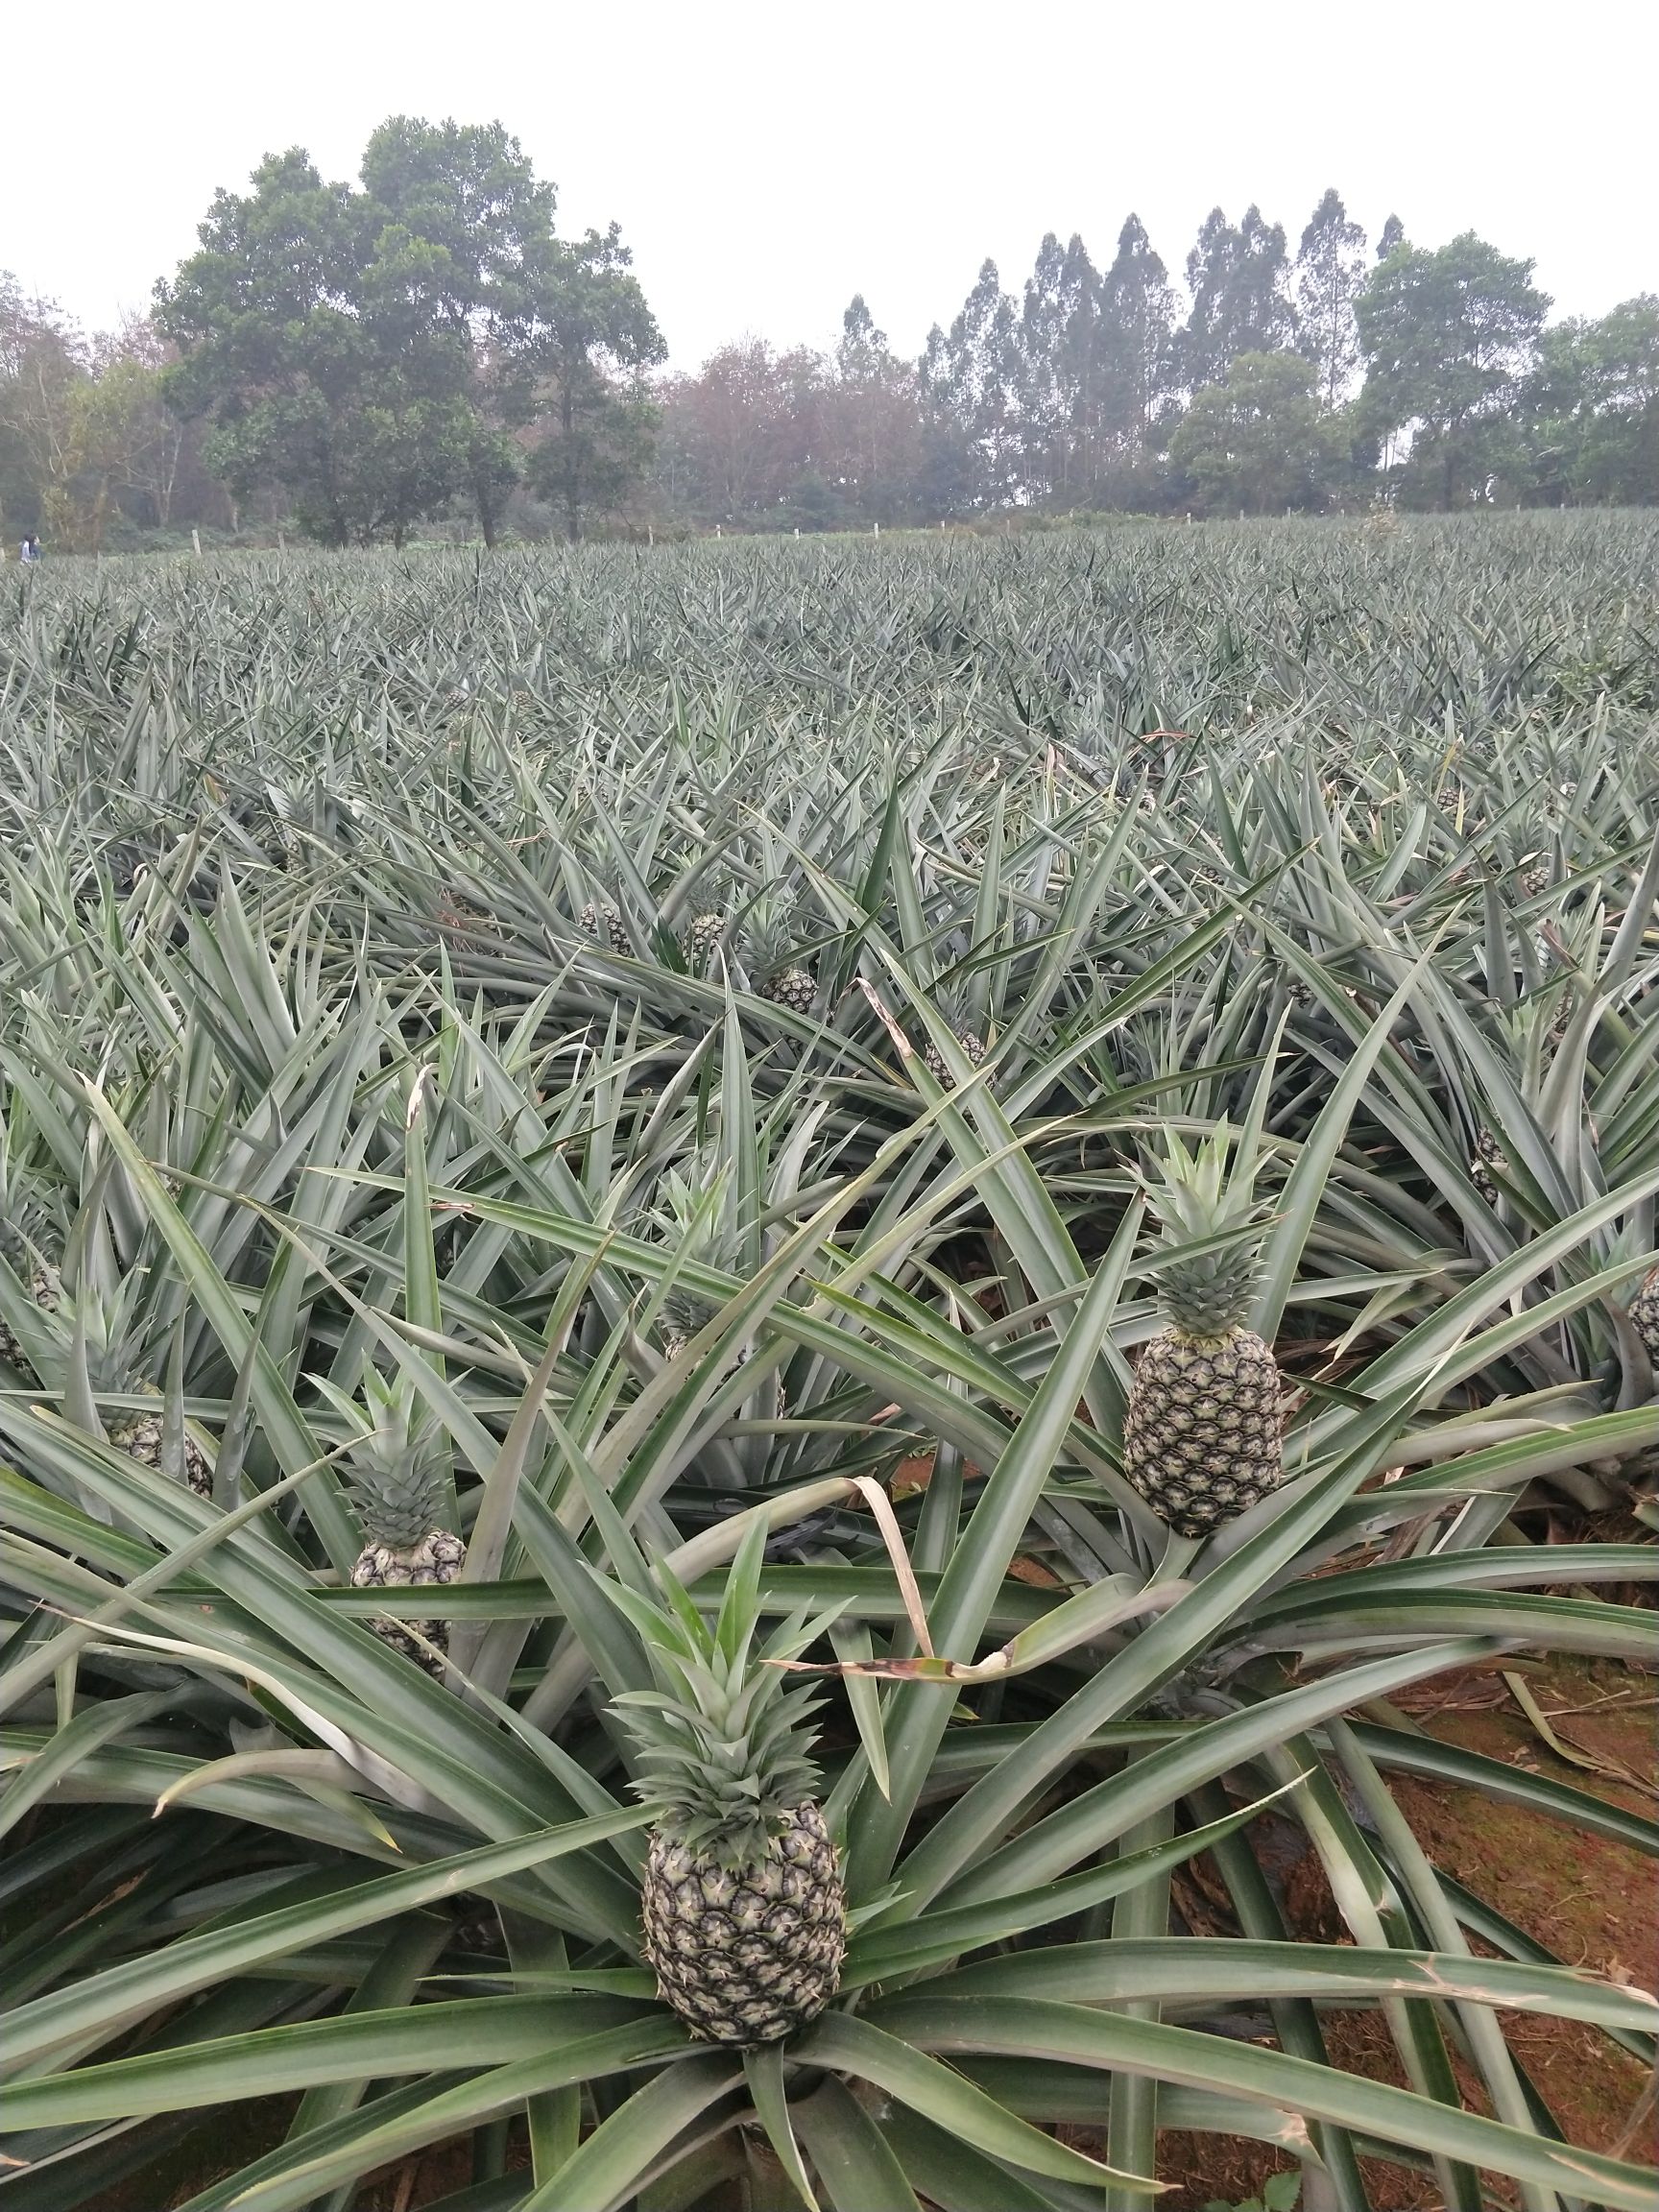 商品详情          本公司菠萝种植基地位于海南省著名产区澄迈县及